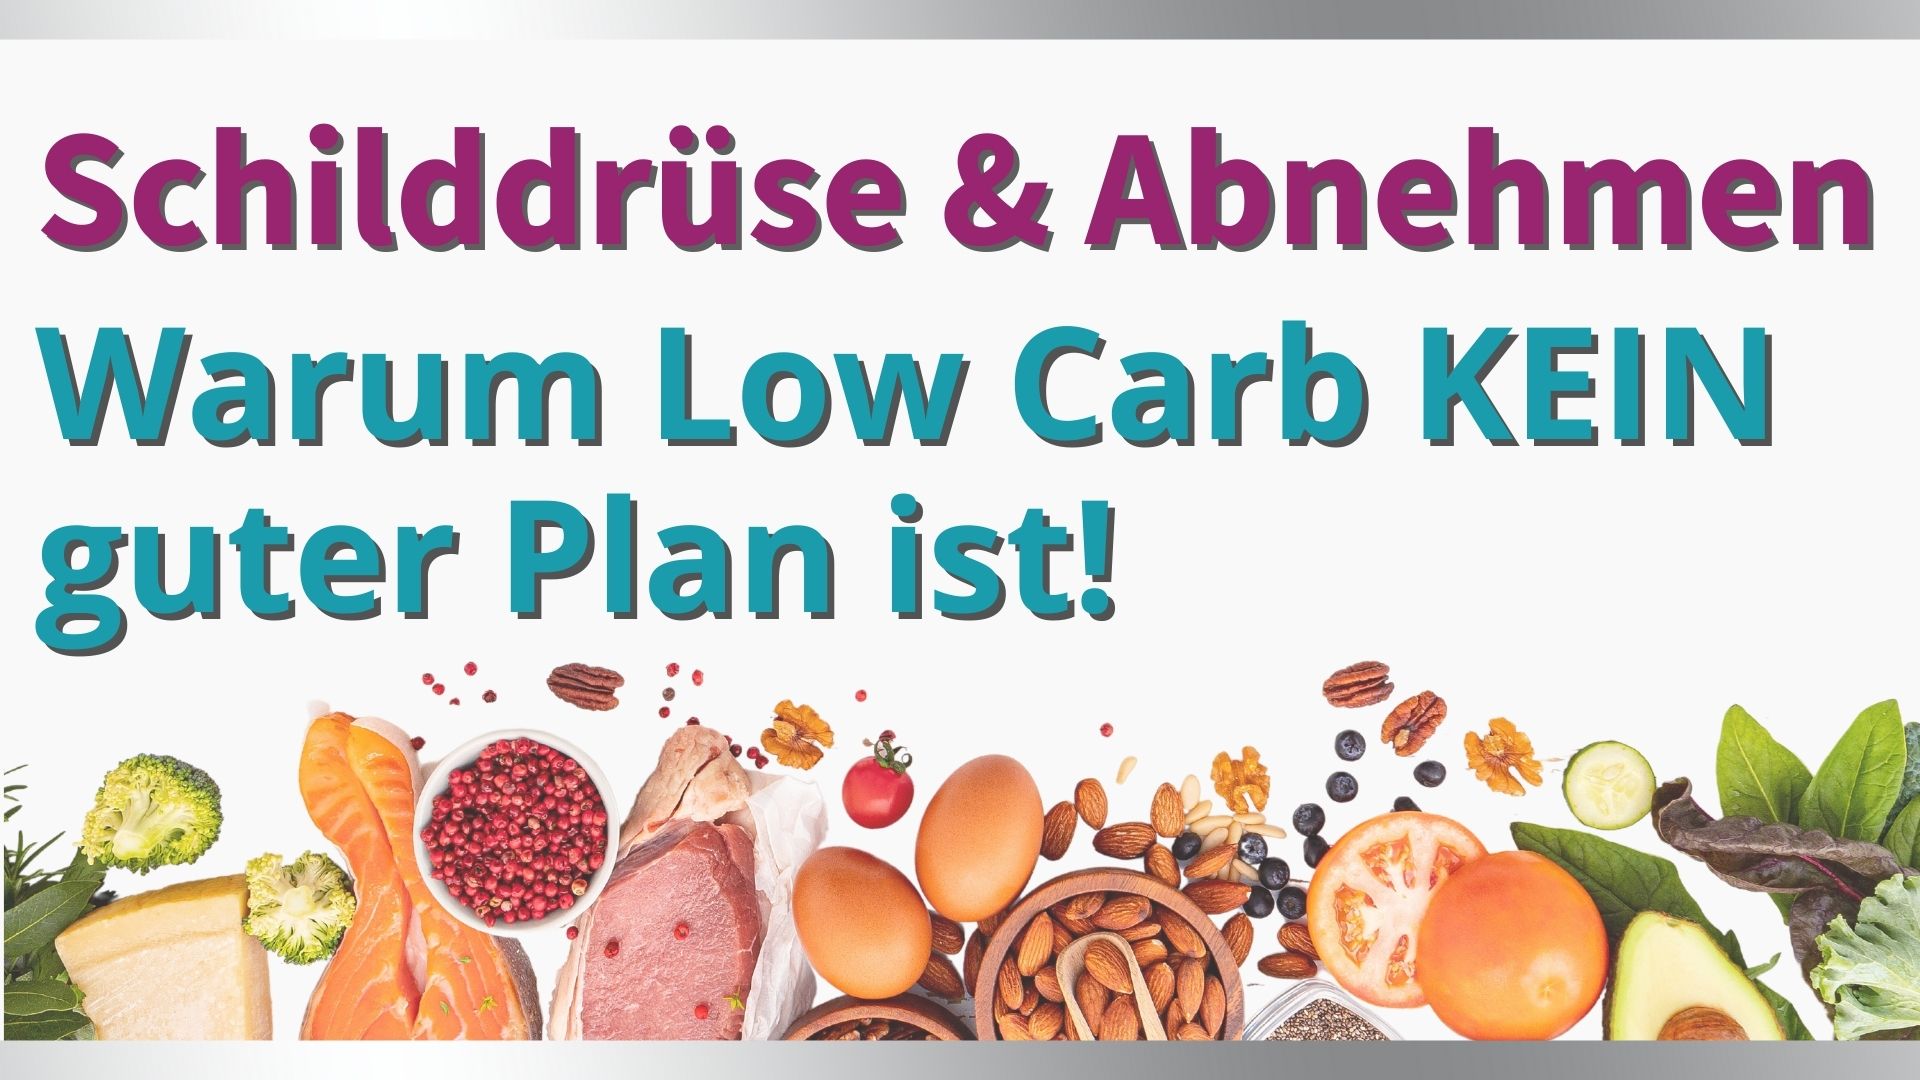 Schilddrüse & Abnehmen: Warum Low Carb KEIN guter Plan ist!